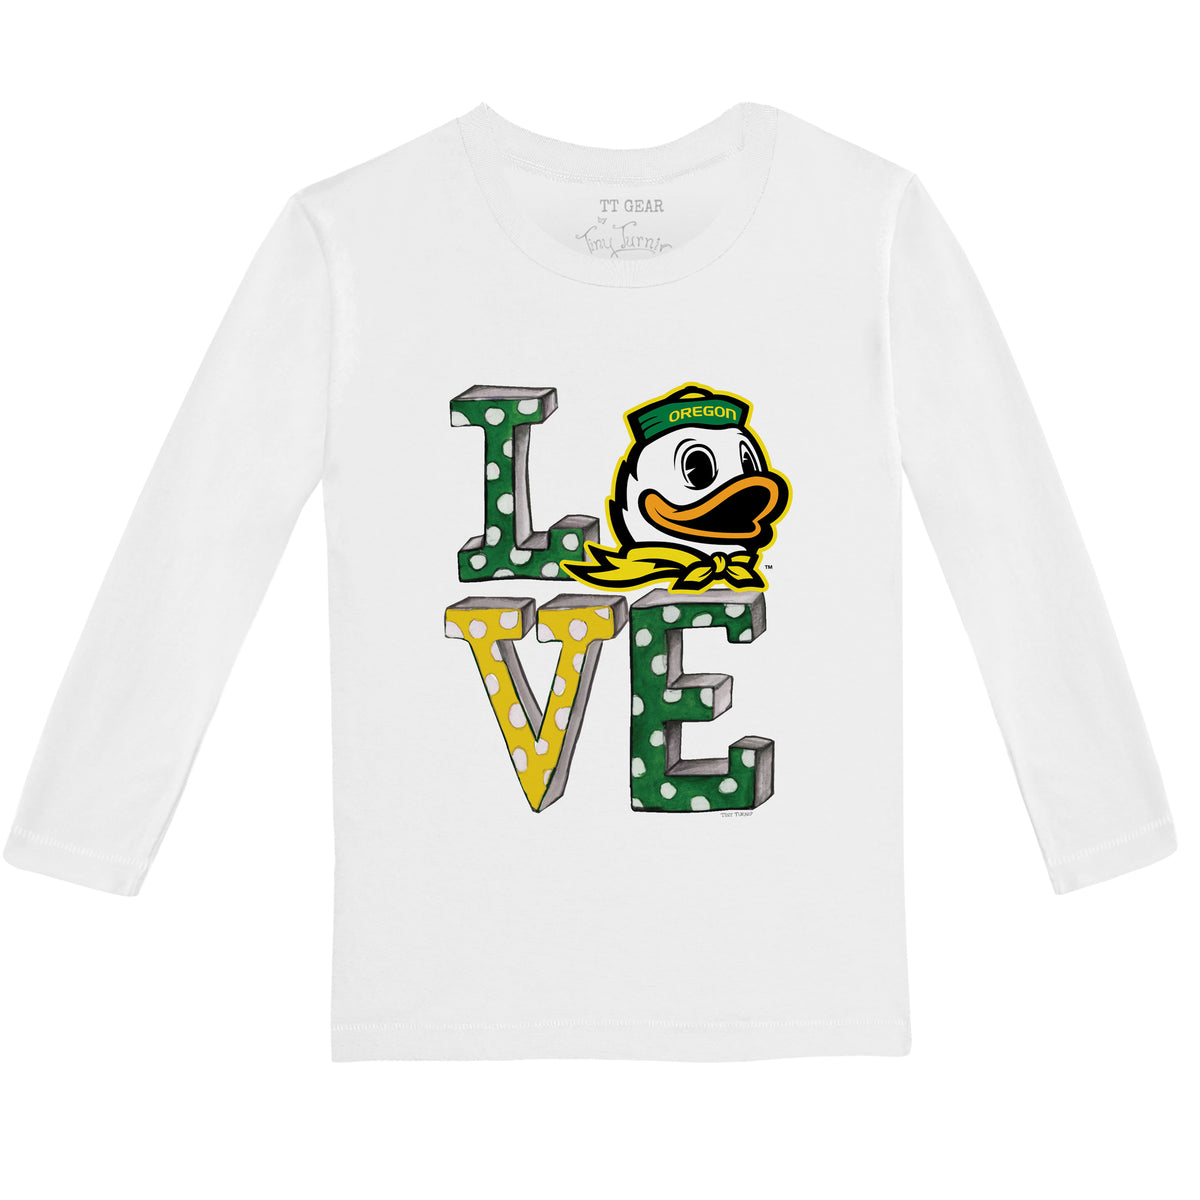 Oregon Ducks Love Long-Sleeve Tee Shirt